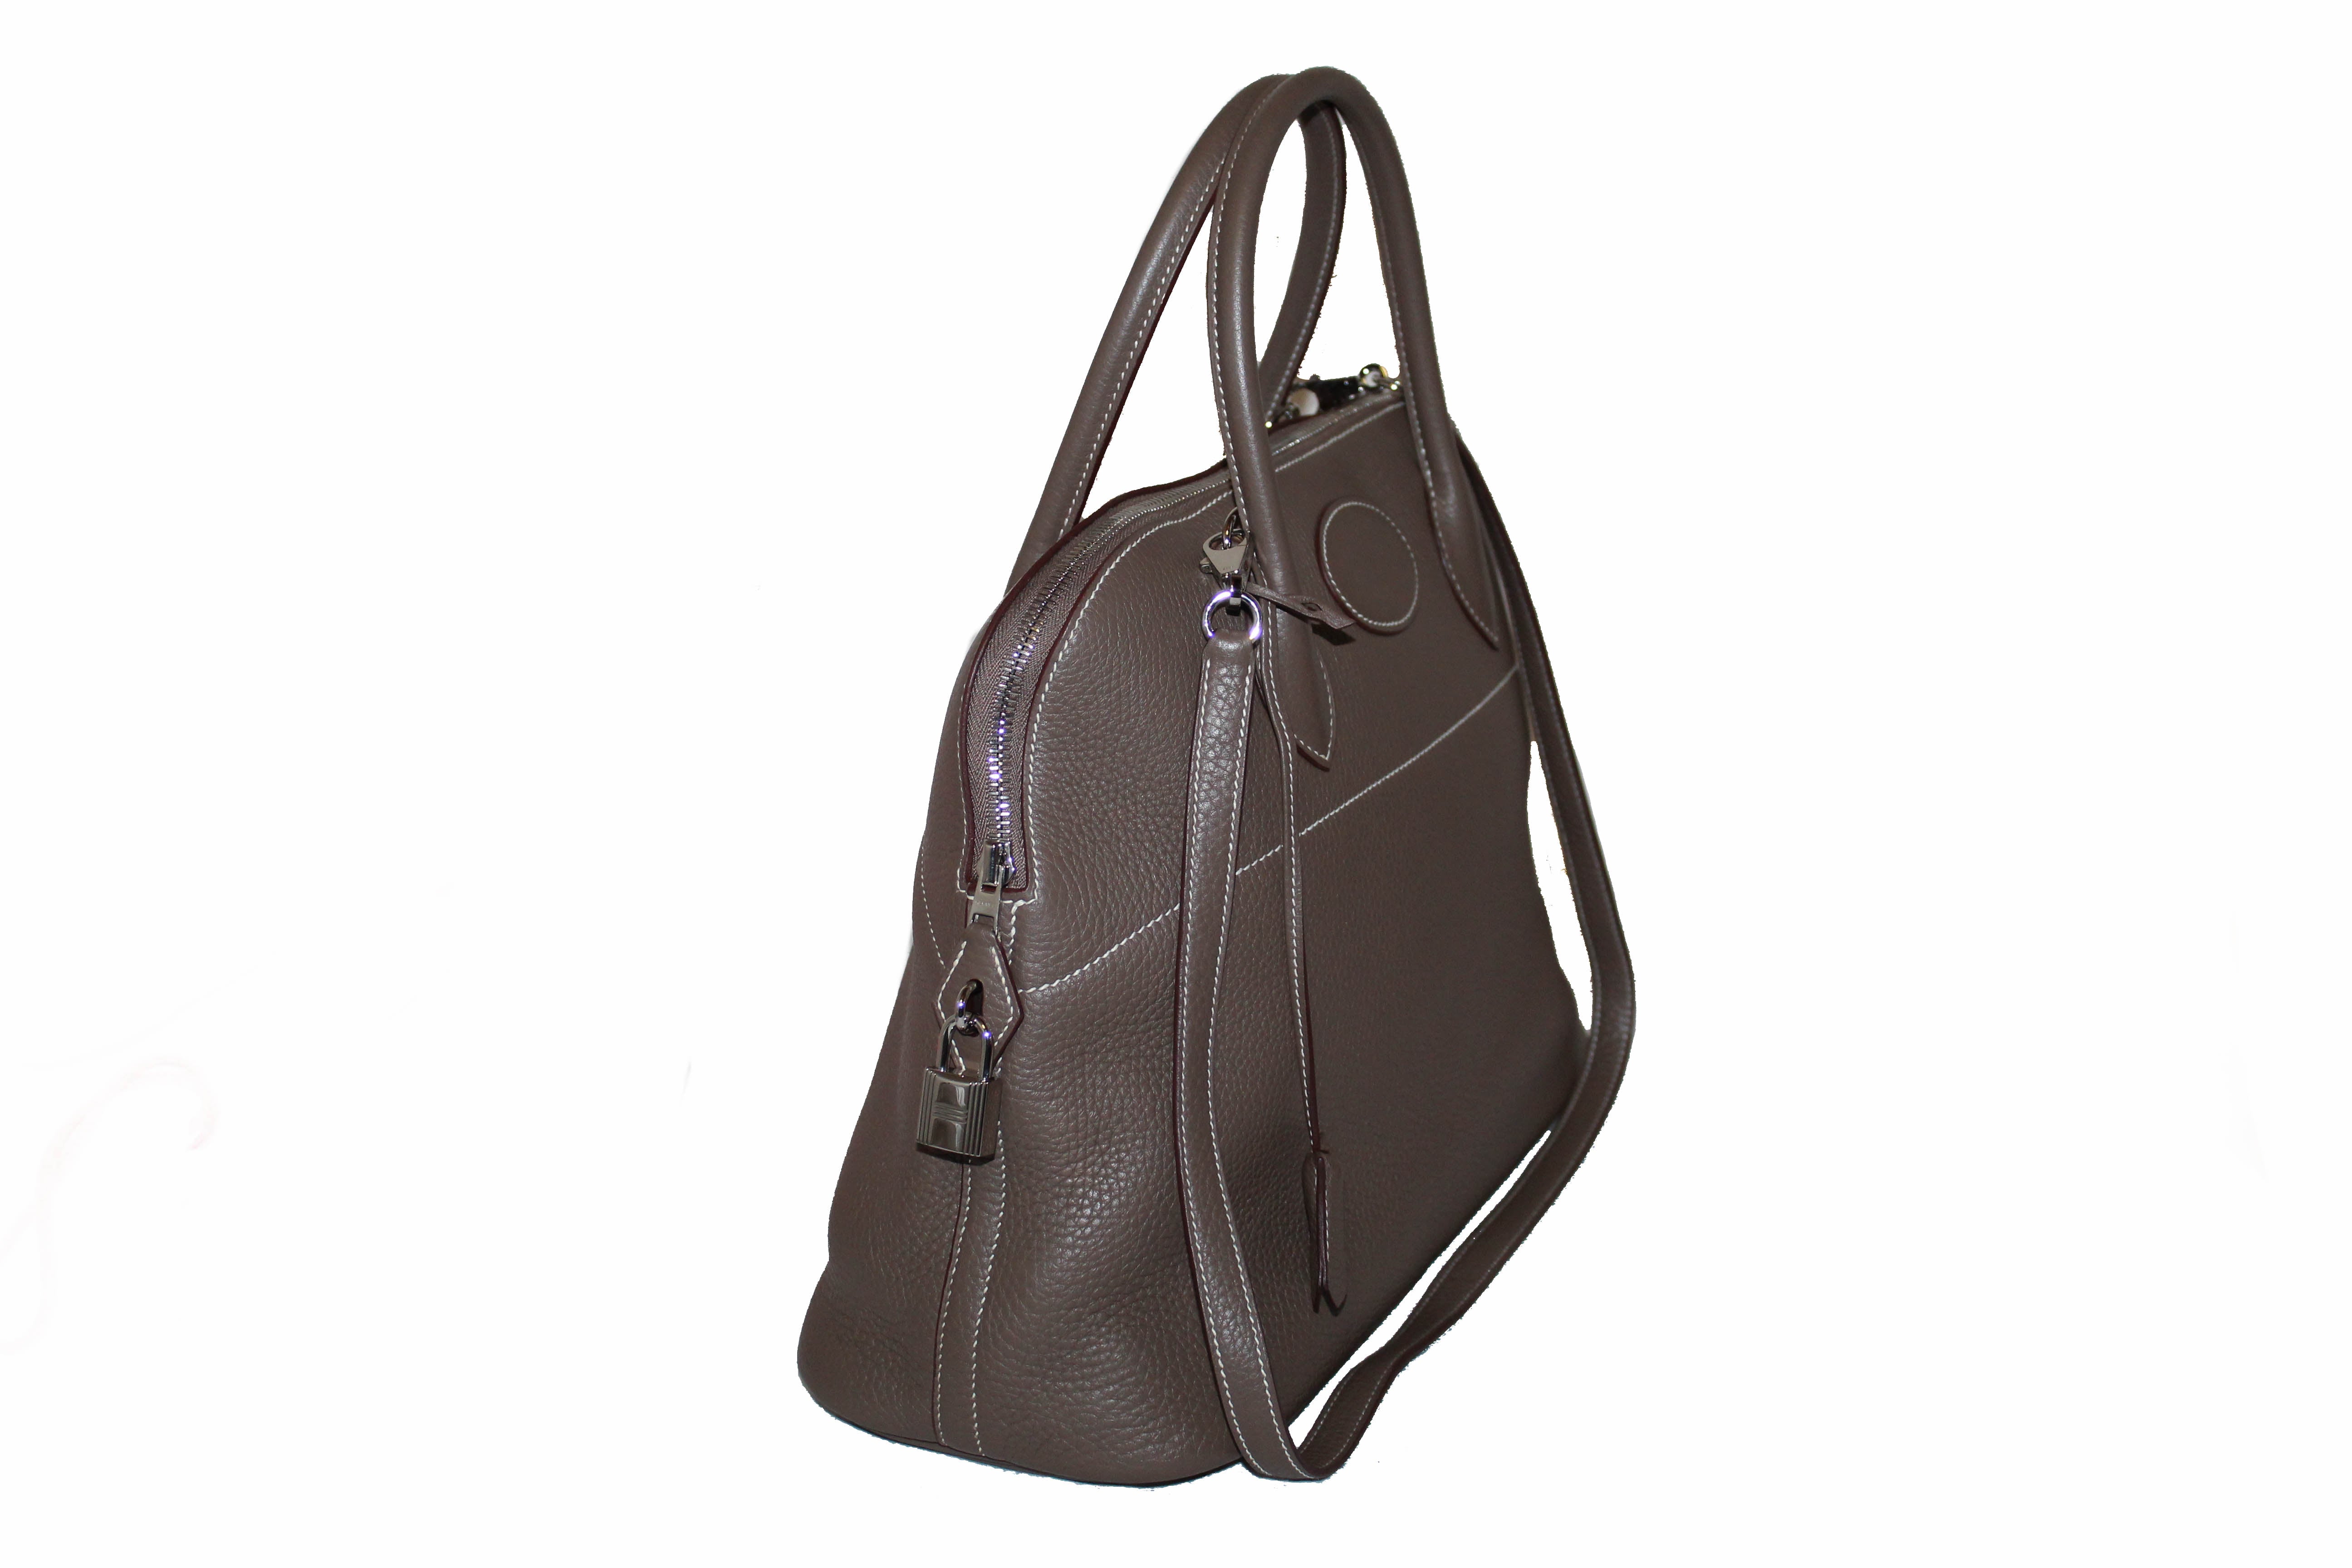 Authentic Hermes Etoupe Bolide 35 Clemence Leather Handbag/Shoulder Ba – Paris Station Shop